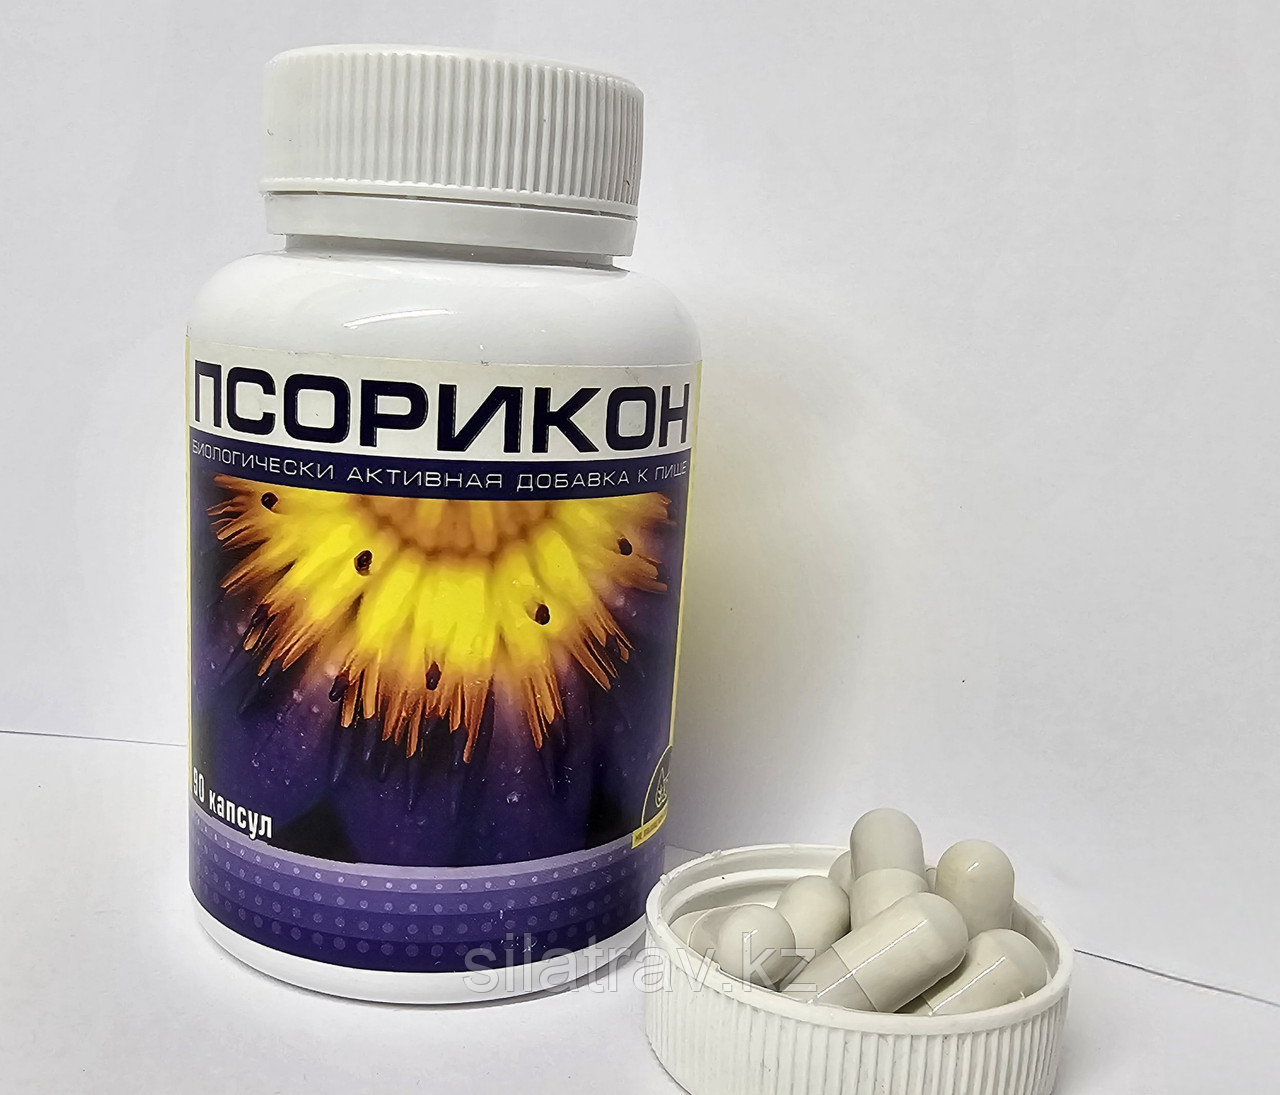 Псорикон – эффективное средство для лечения псориаза - 90 капсул.